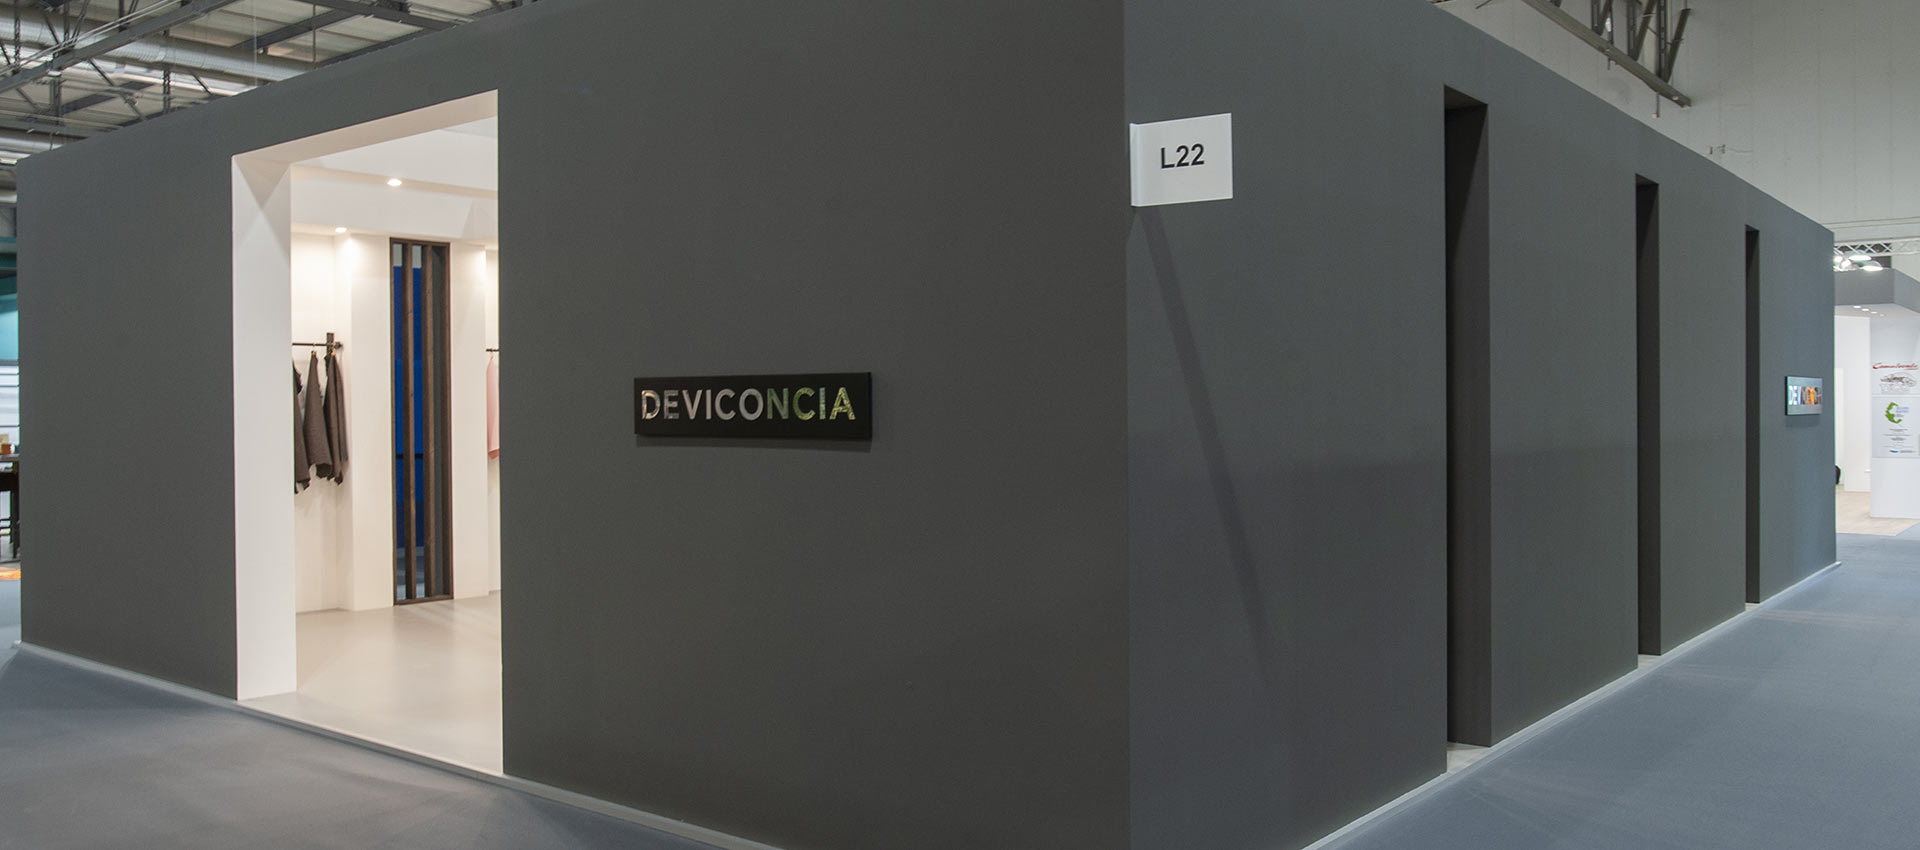 deviconcia-01